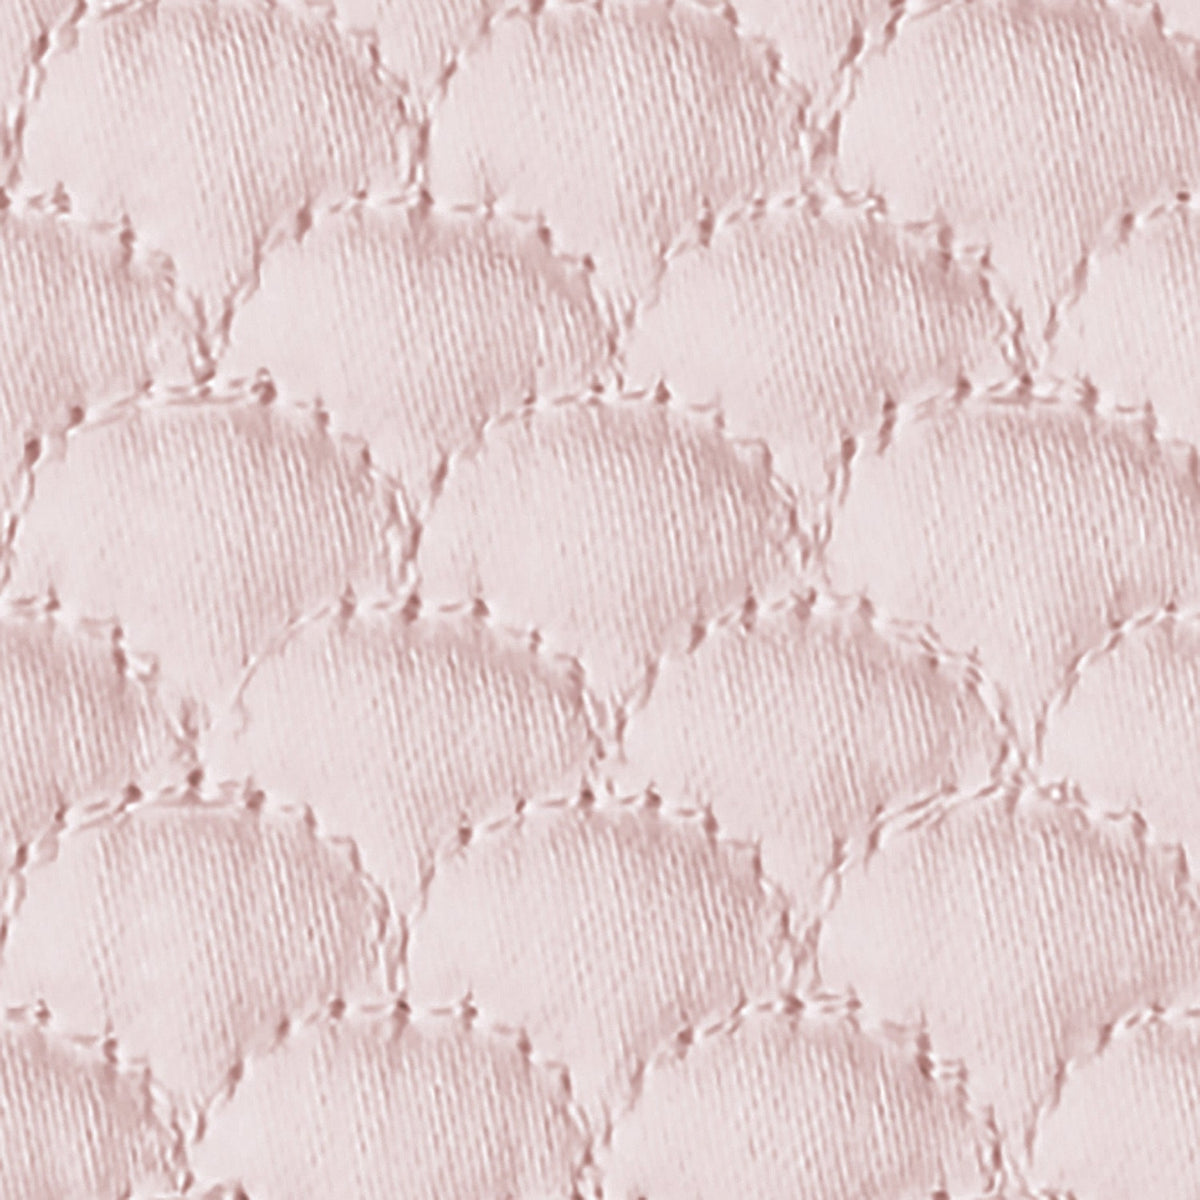 Swatch Sample of Matouk Alba Bedding Pink